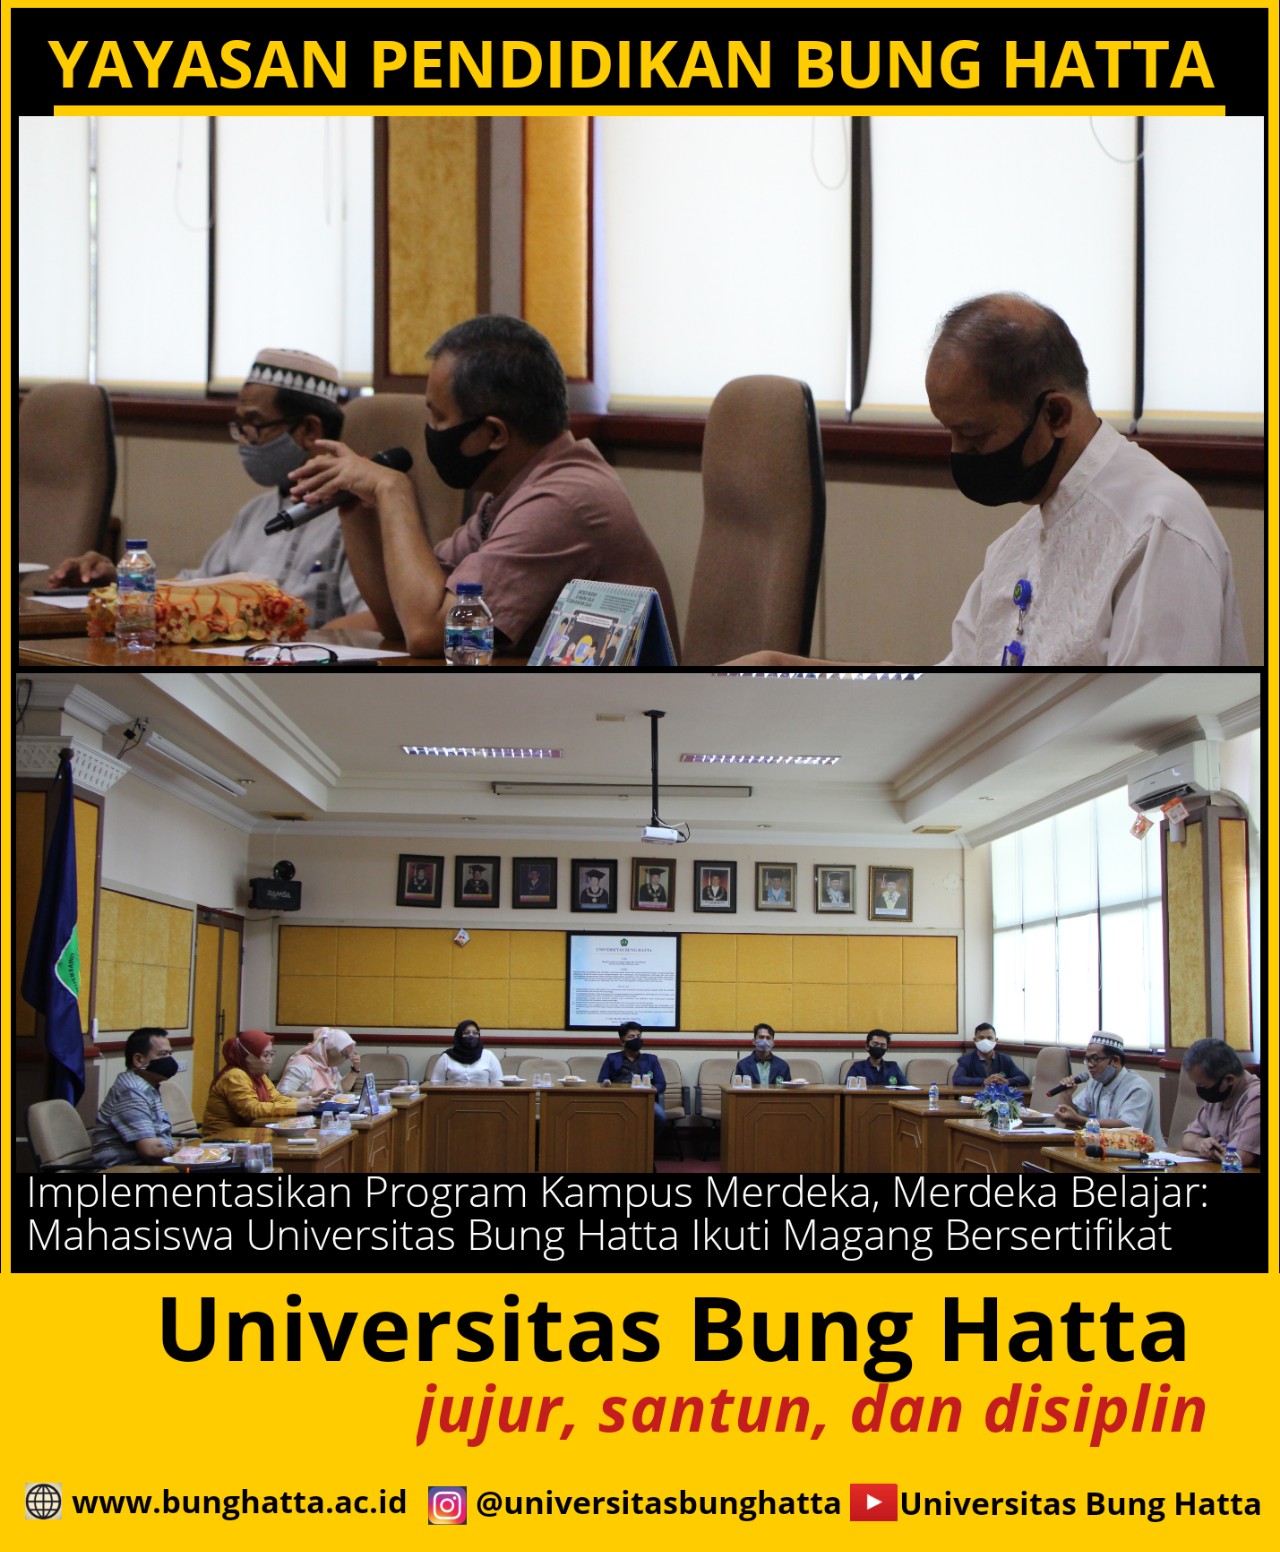 Implementasikan Program Kampus Merdeka, Merdeka Belajar: Mahasiswa Universitas Bung Hatta Ikuti Magang Bersertifikat